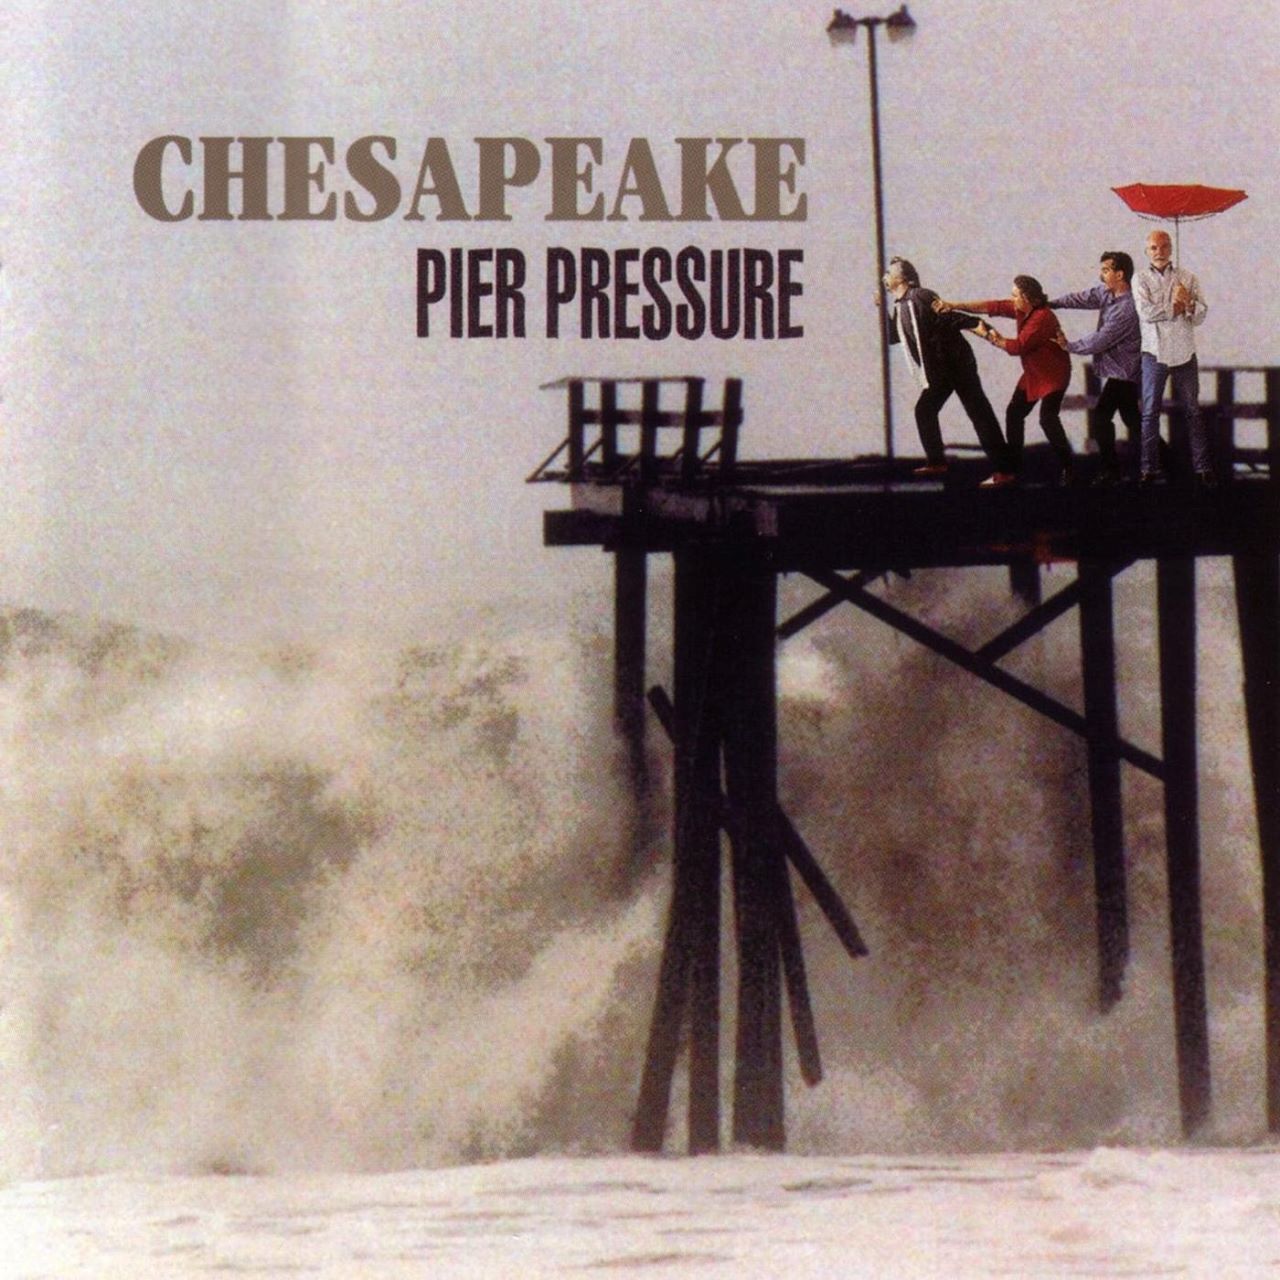 Chesapeake - Pier Pressure cover album